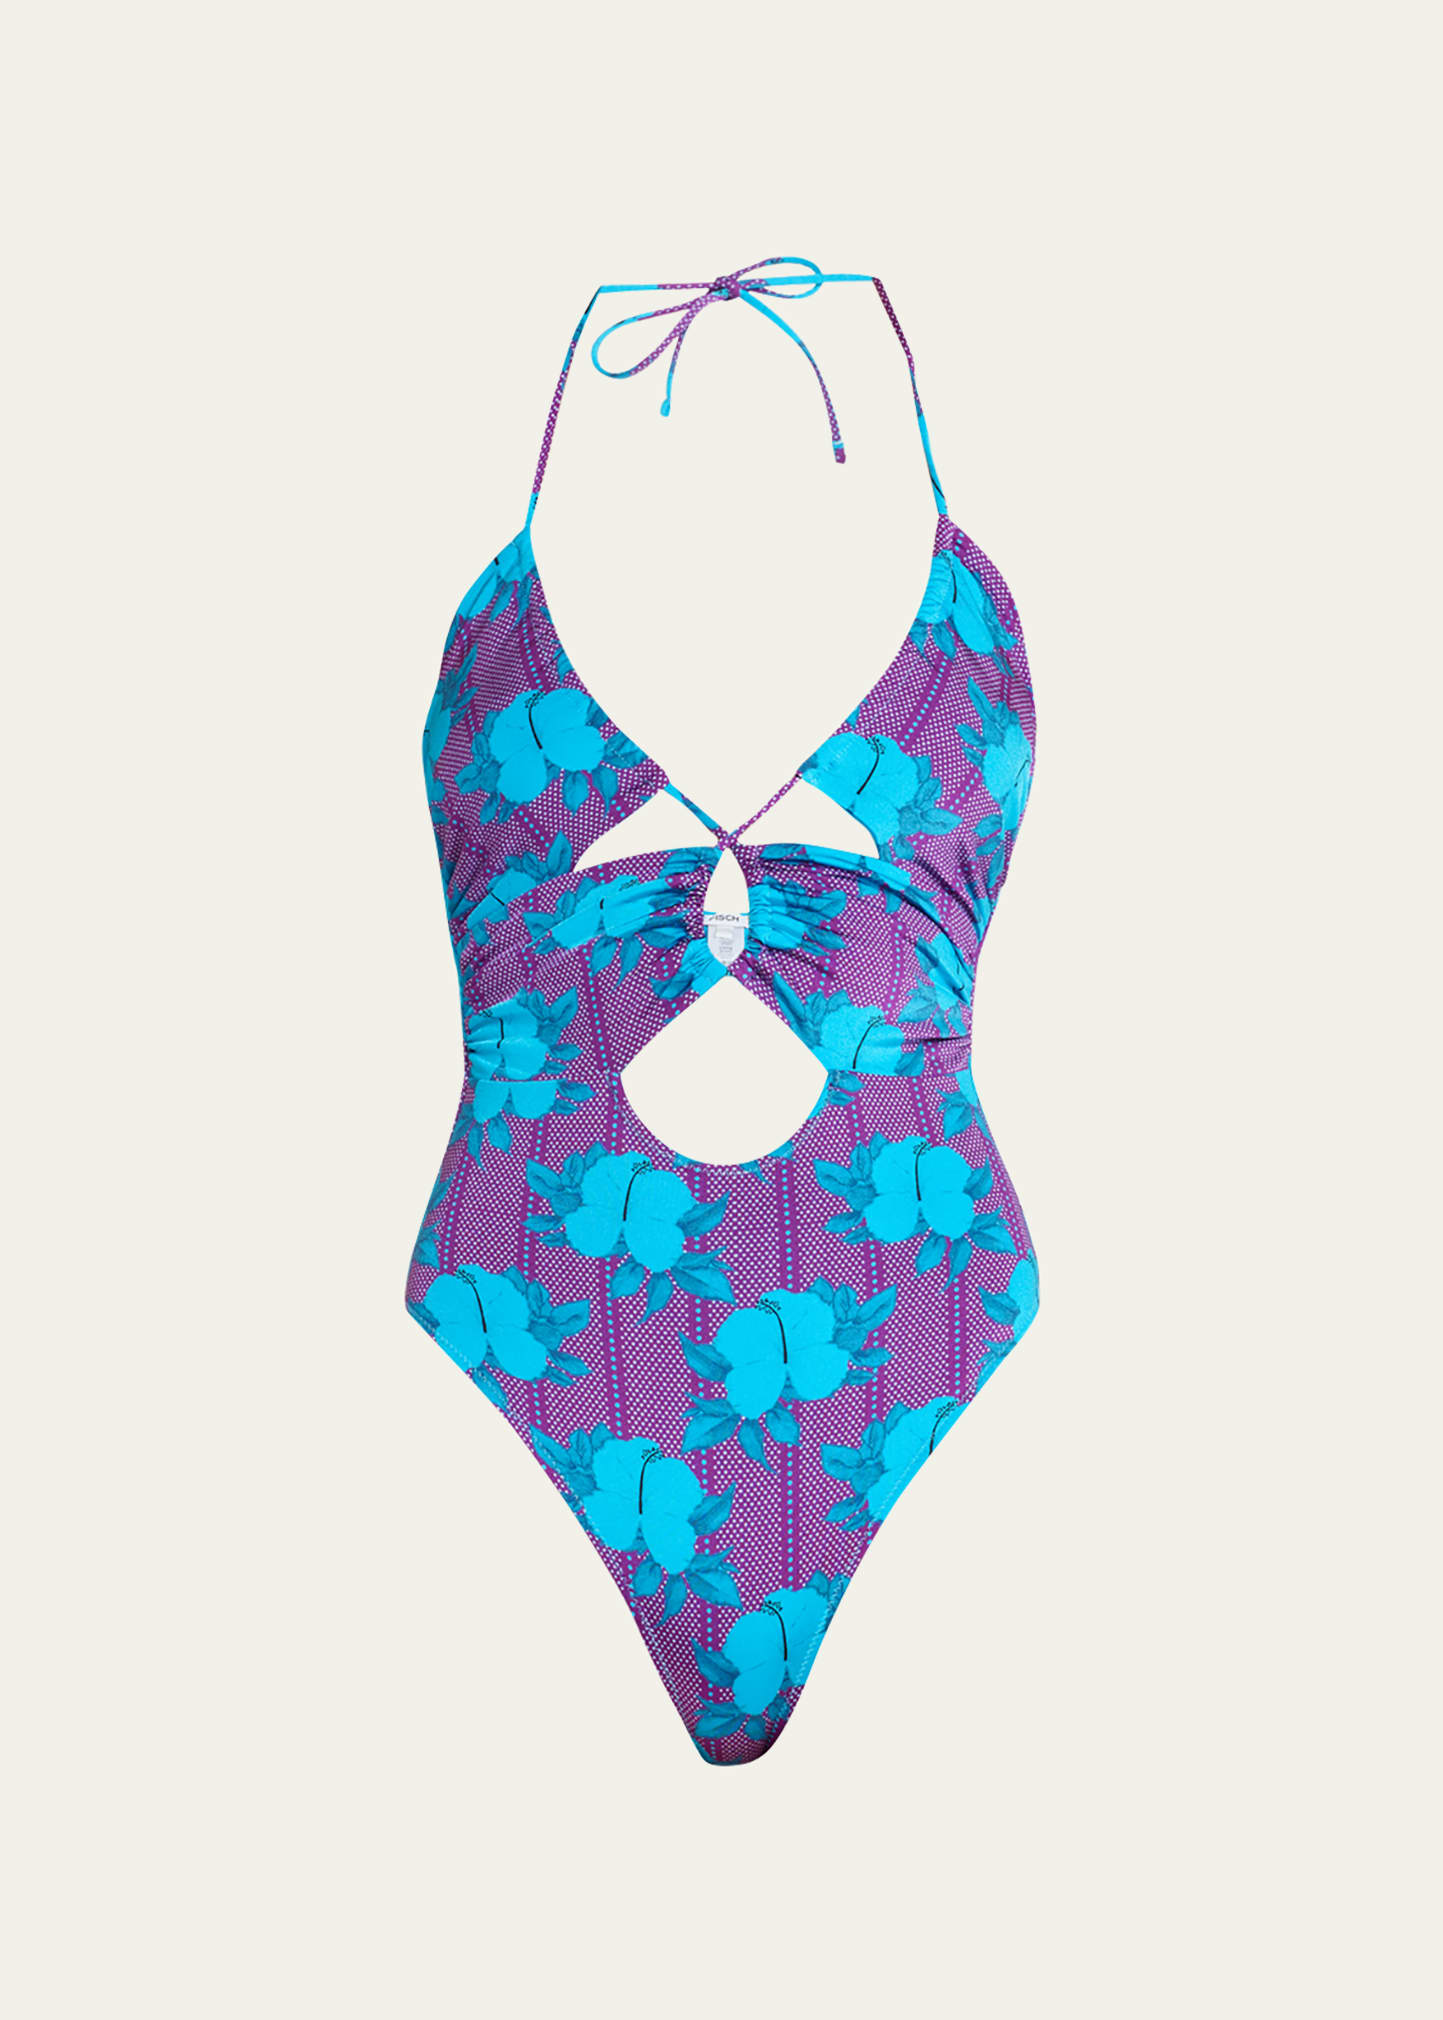 FISCH Saba Cutout One-Piece Swimsuit